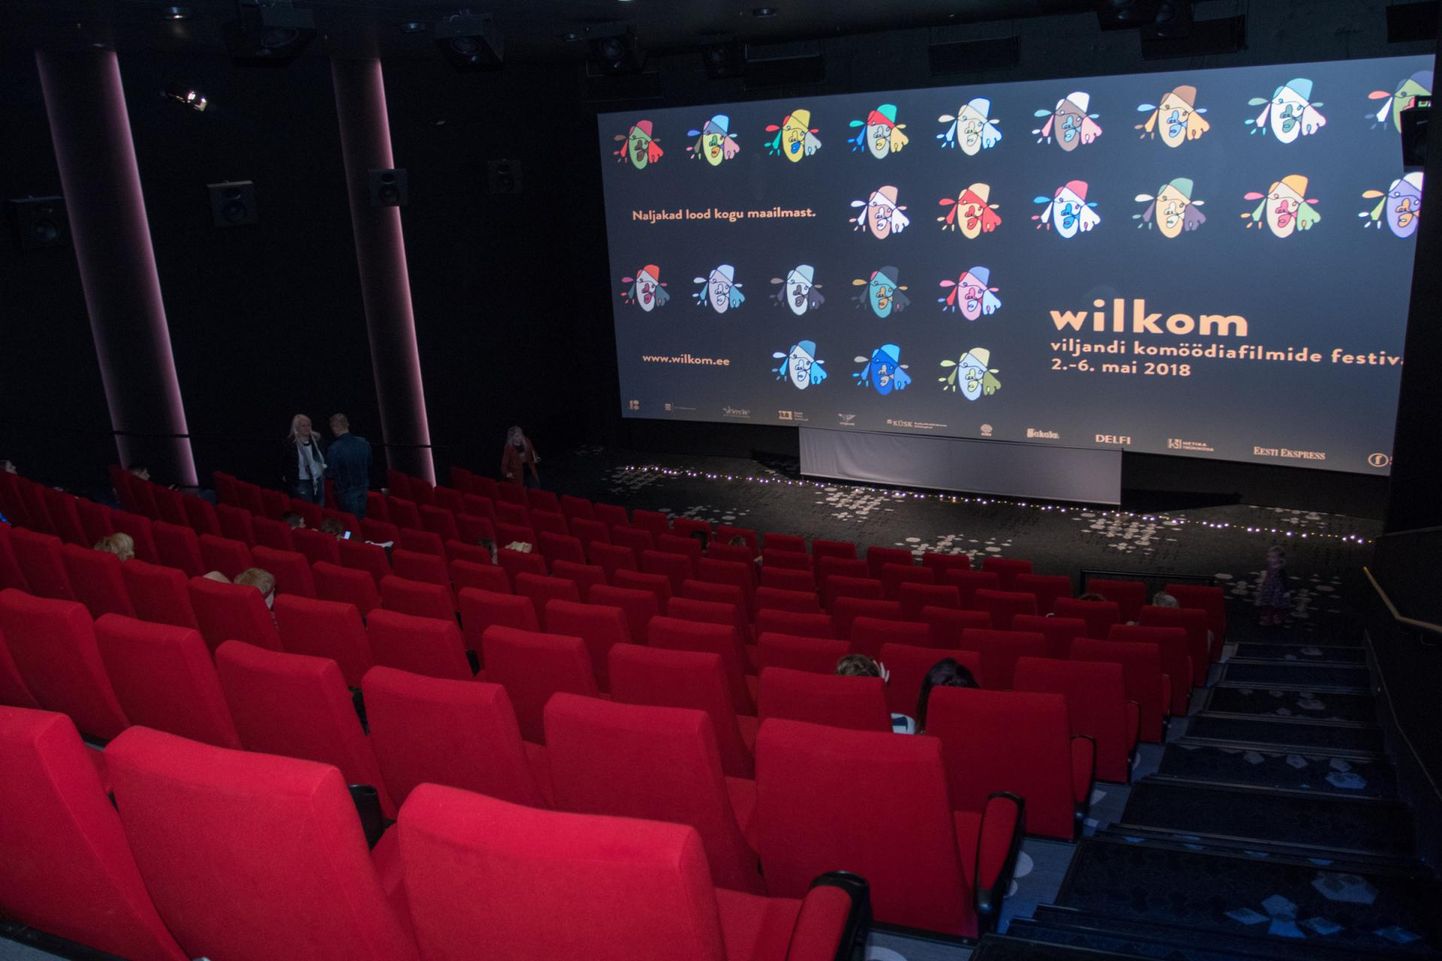 Viljandi komöödiafilmide festivali "Wilkom" lükati koroonaviiruse puhangu tõttu sügisesse.